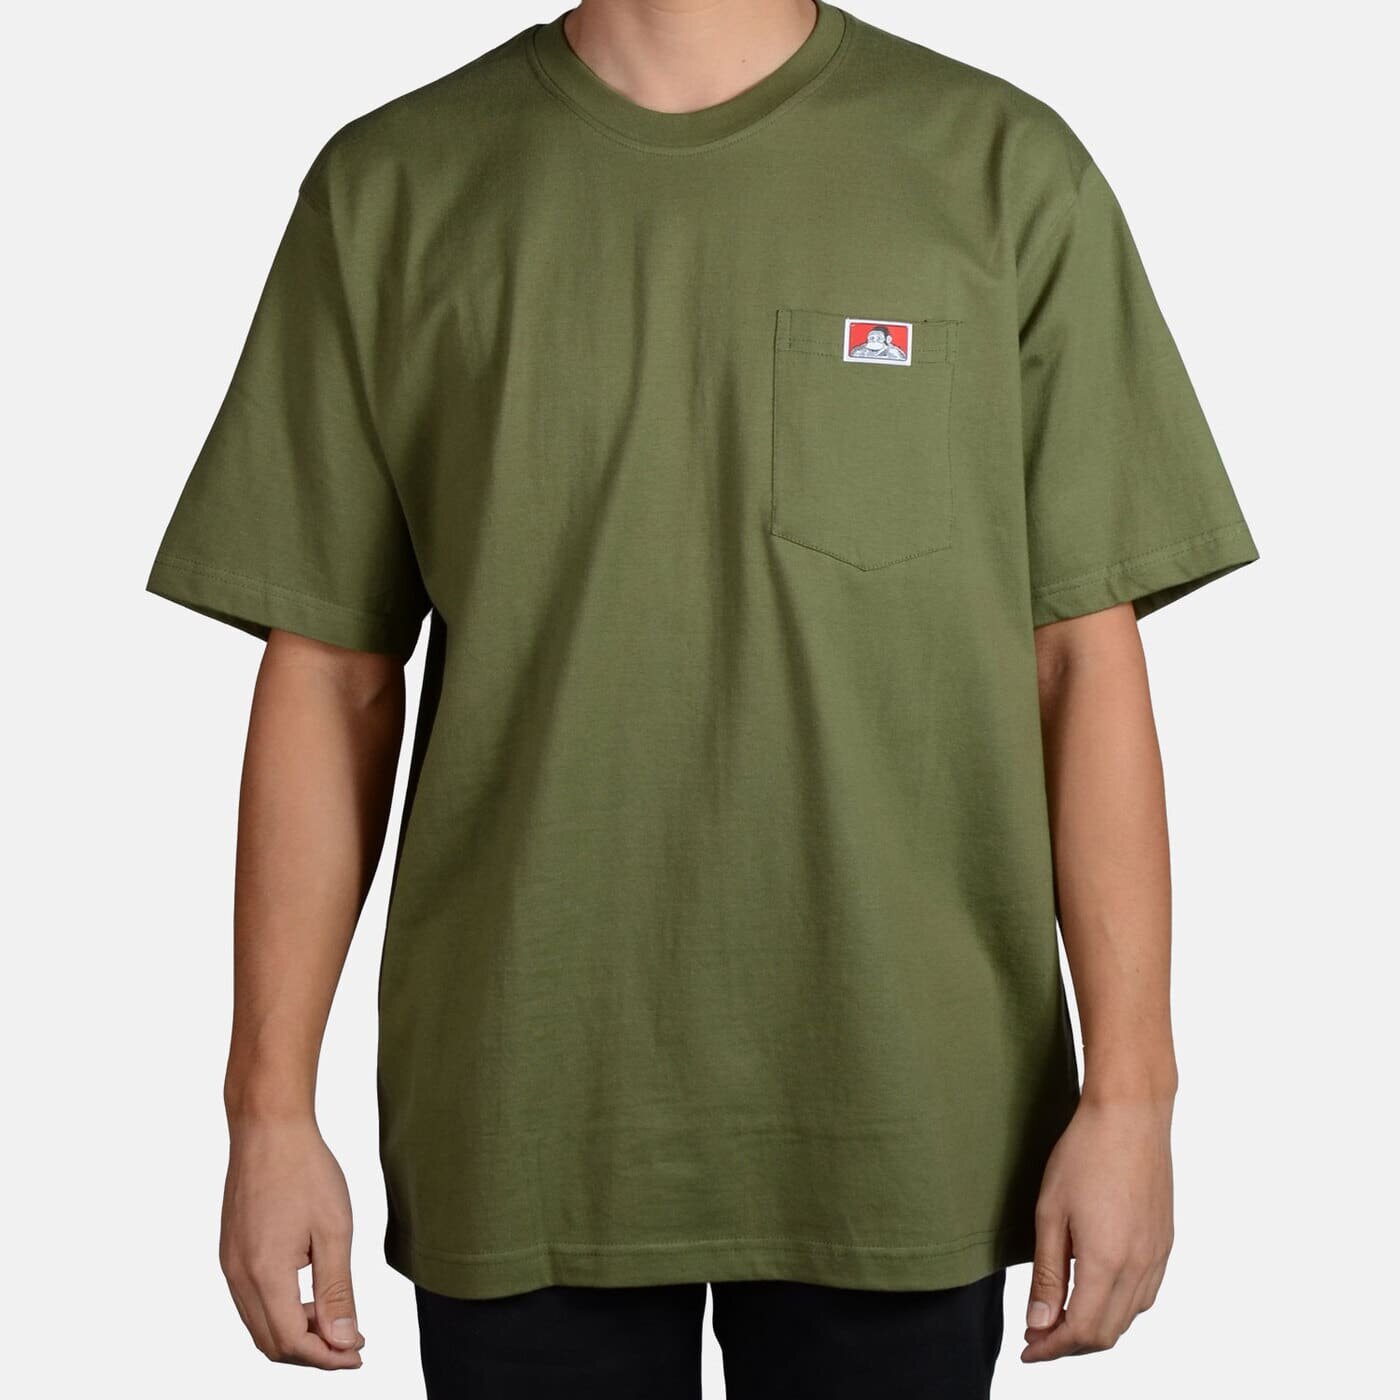 Vejnavn Royal familie vest Ben Davis Heavy Duty Pocket T-Shirts||Free Shipping — The OG's Clothing Shop